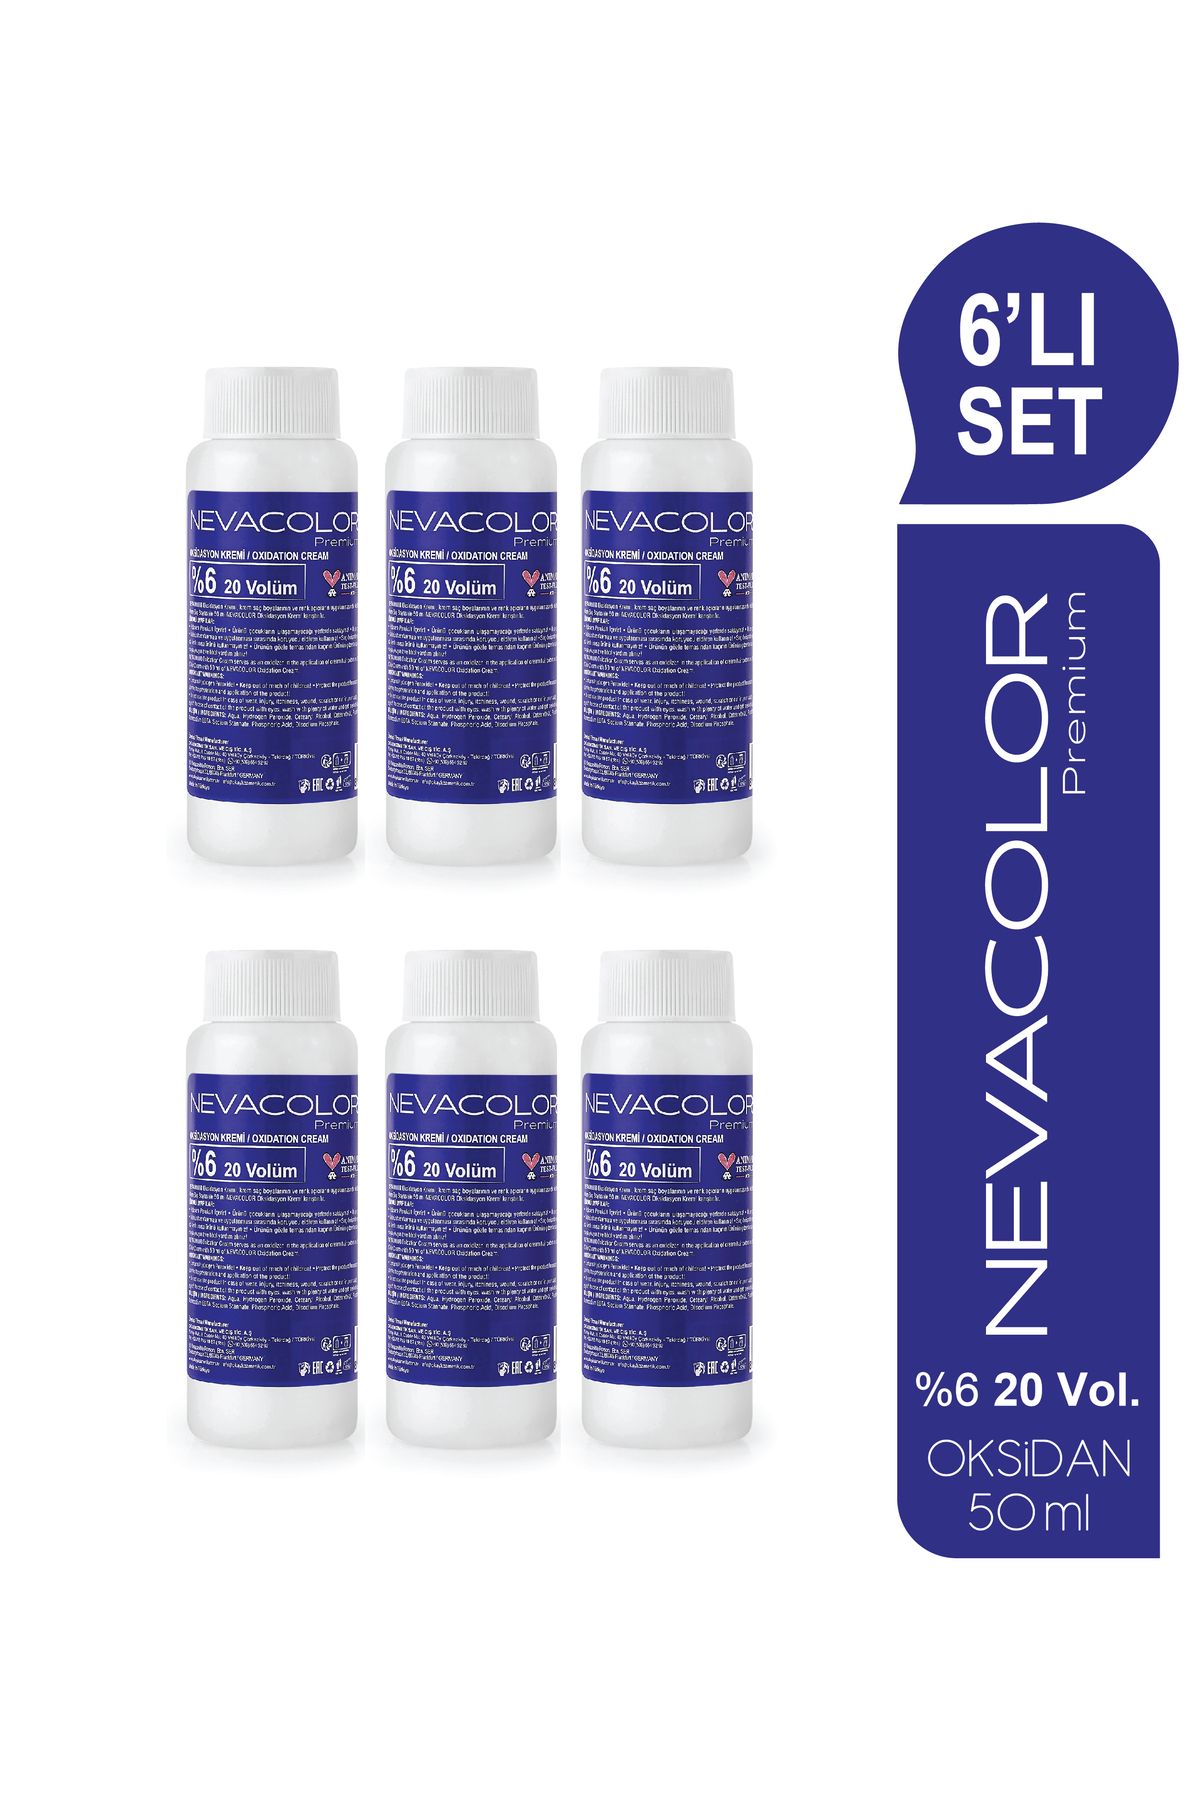 Neva Color Oksidasyon Kremi 50 ml - 20 Volüm %6 6'lı